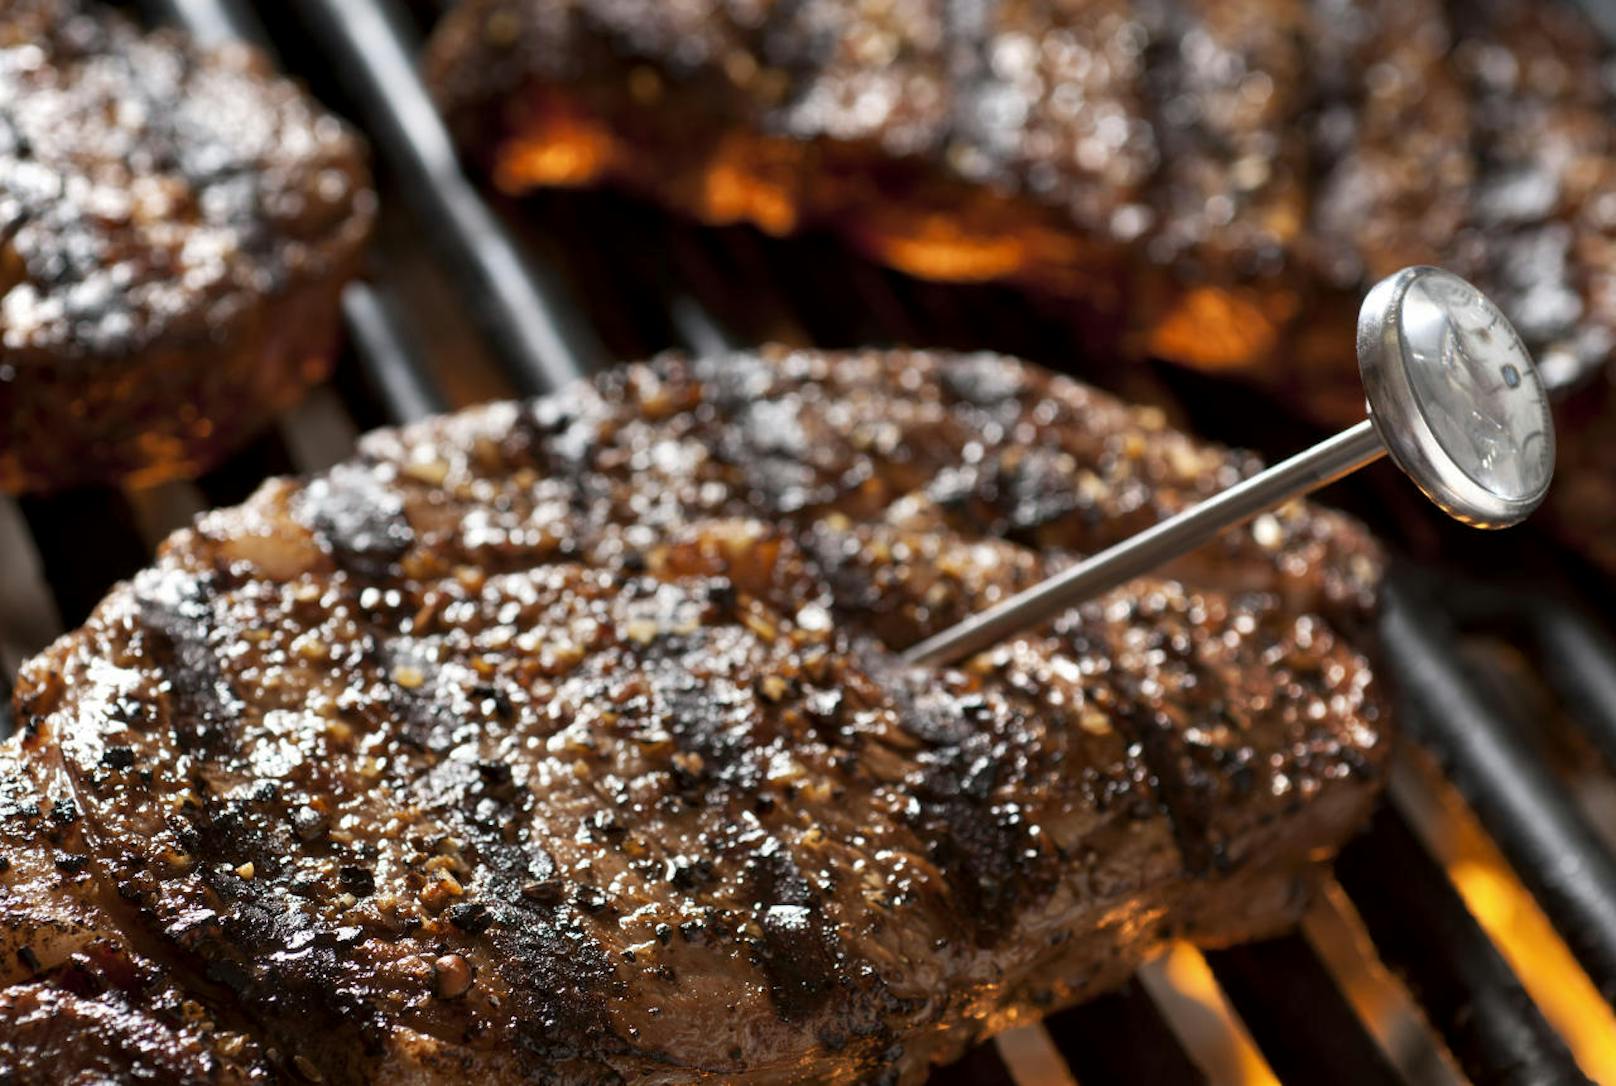 7. Ein Kerntemperaturfühler erlaubt die exakte Überwachung der Temperatur im Inneren des Steaks und somit dessen Garstufe.